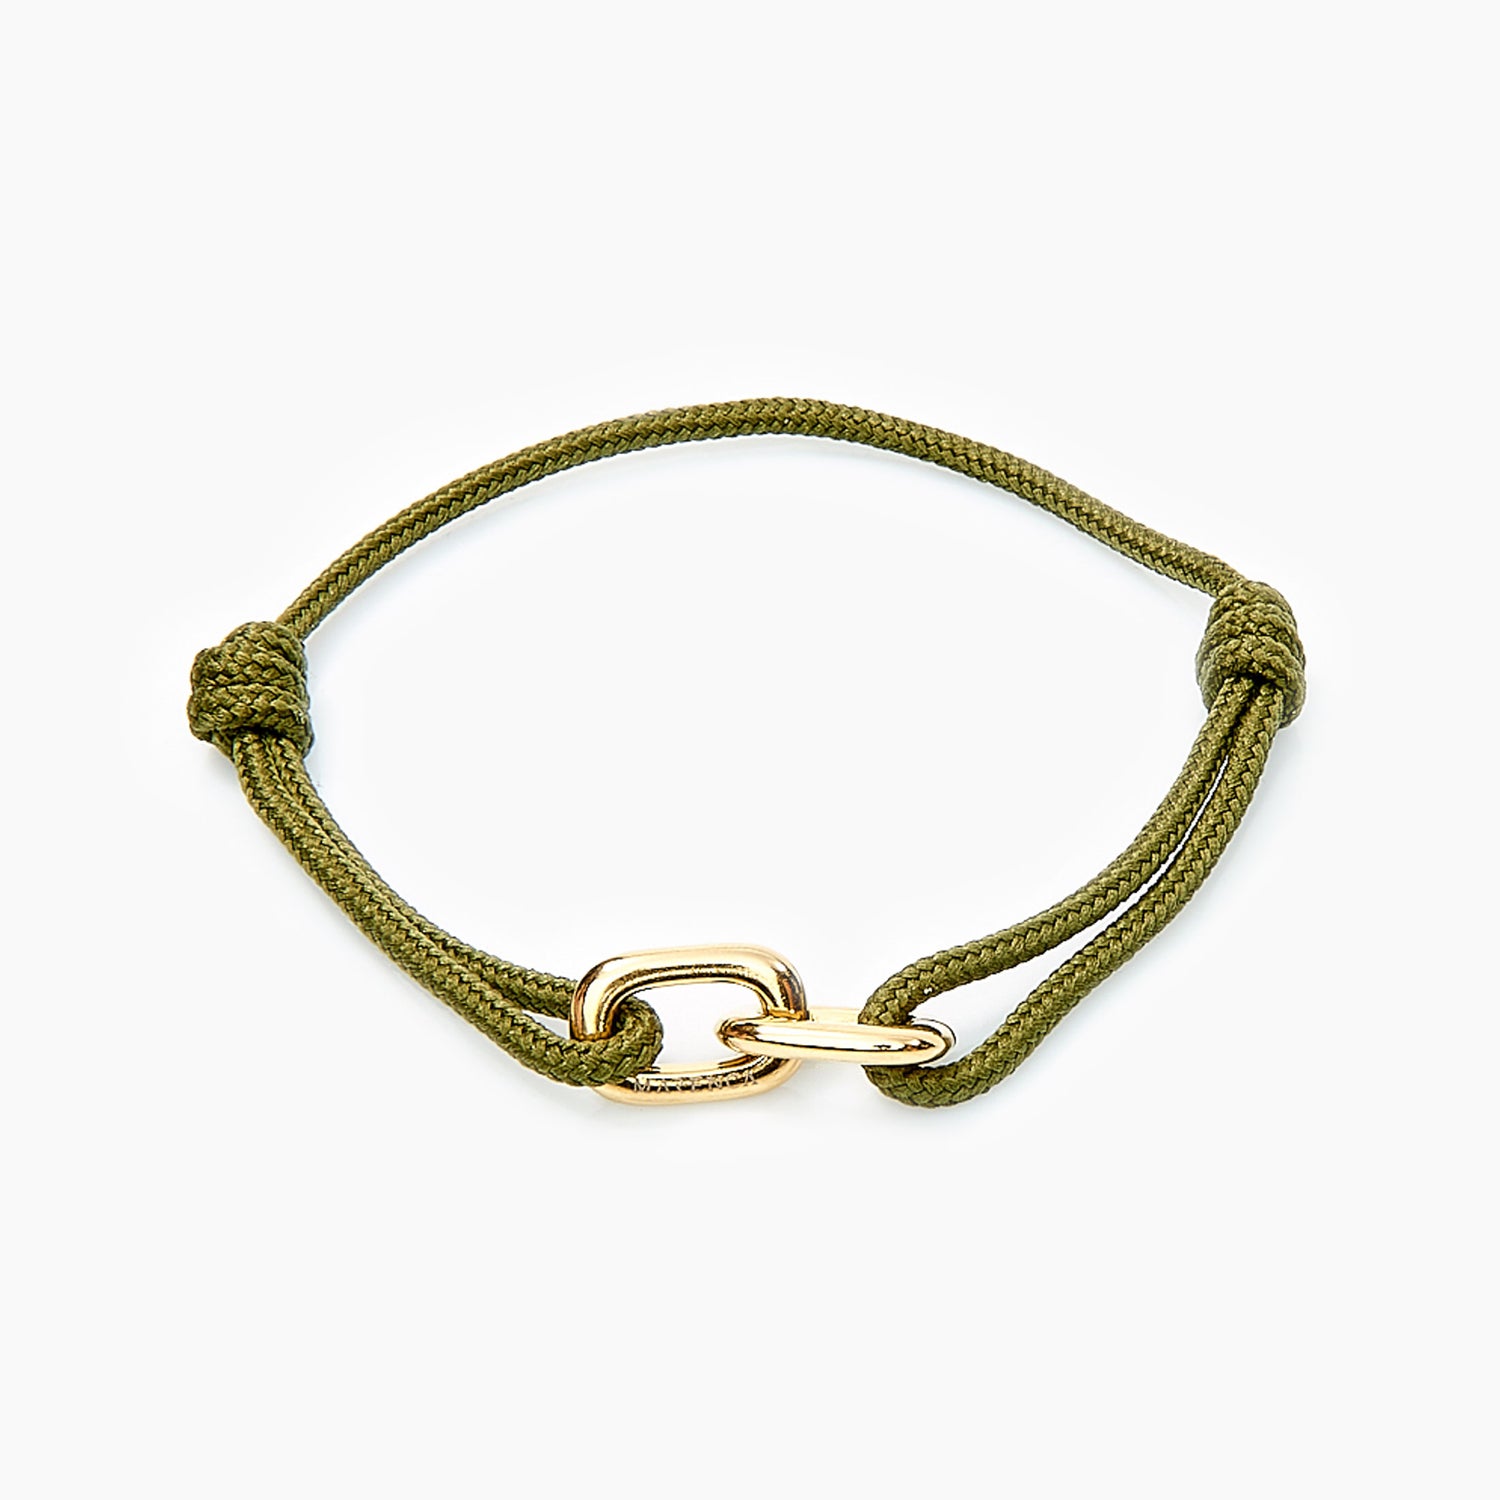 Bos Groene Armband met Gouden Ringen